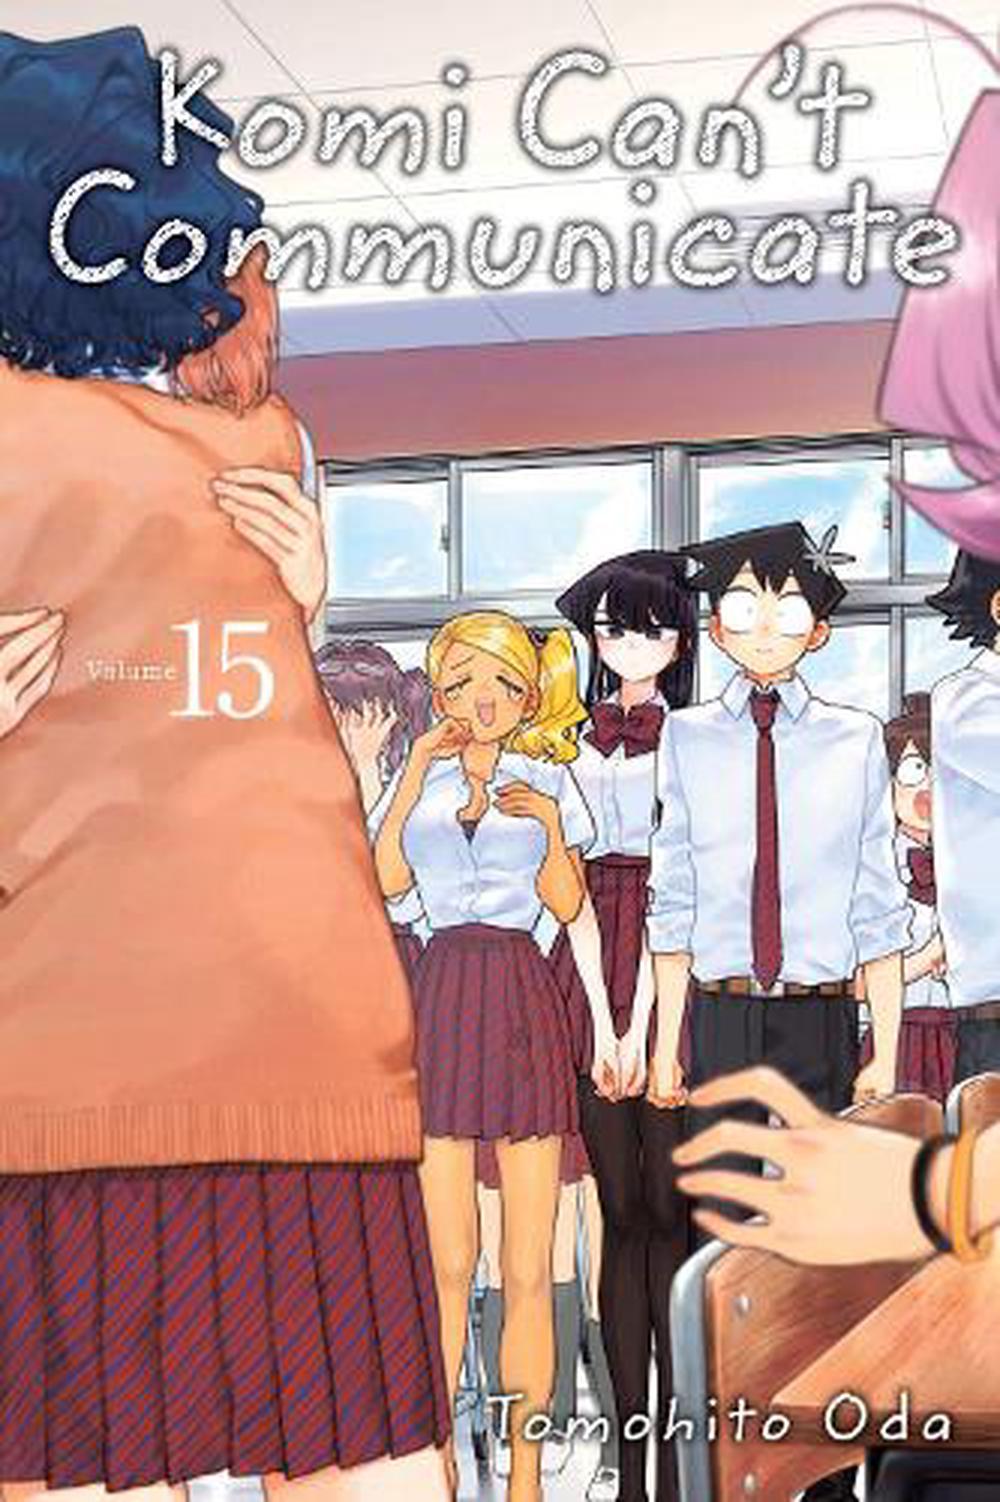 Komi Cant Communicate Manga Volume 25